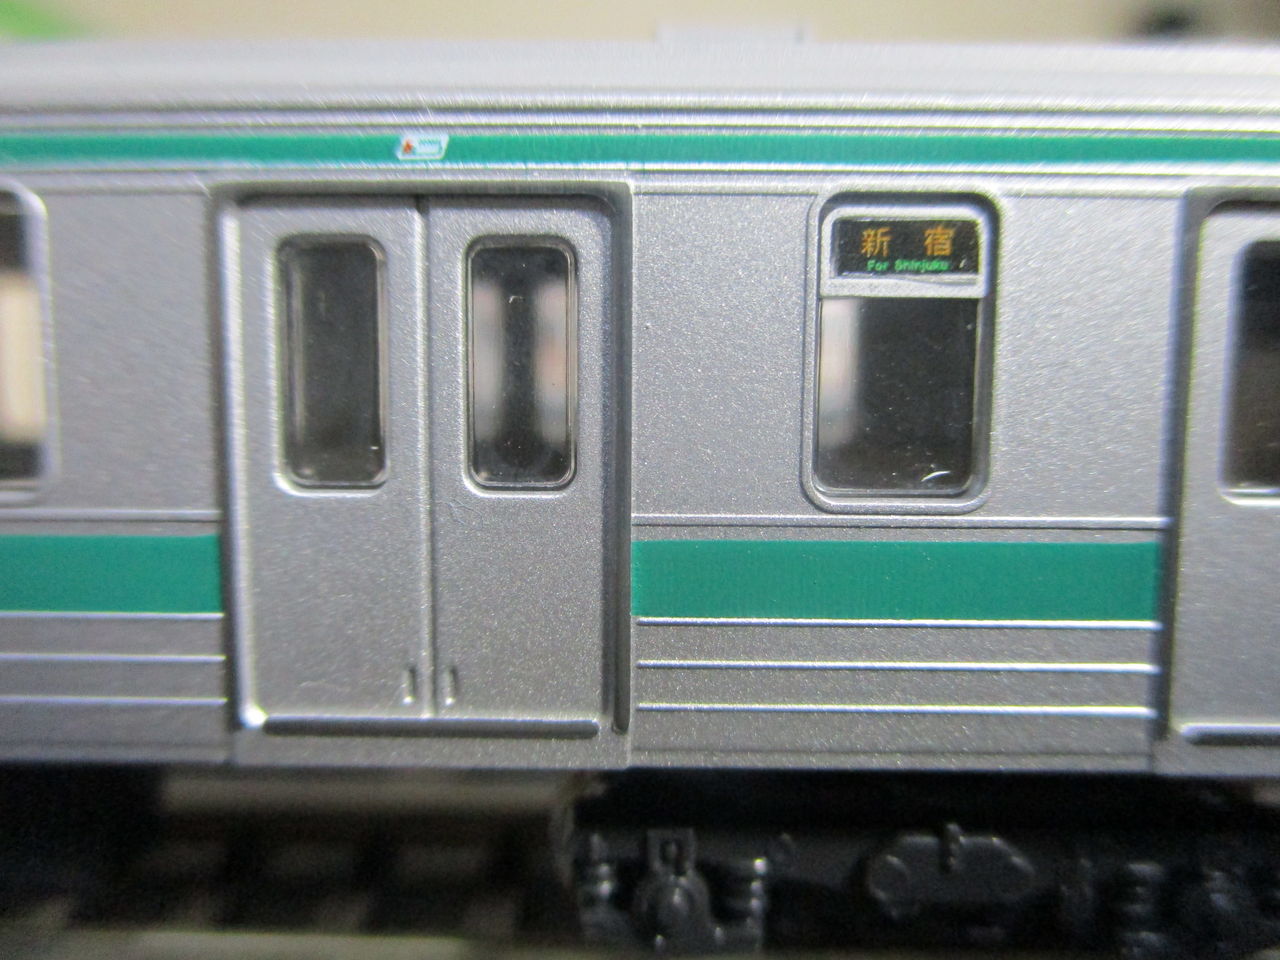 KATO 埼京線 E233系 205系 セット - www.jules.ie